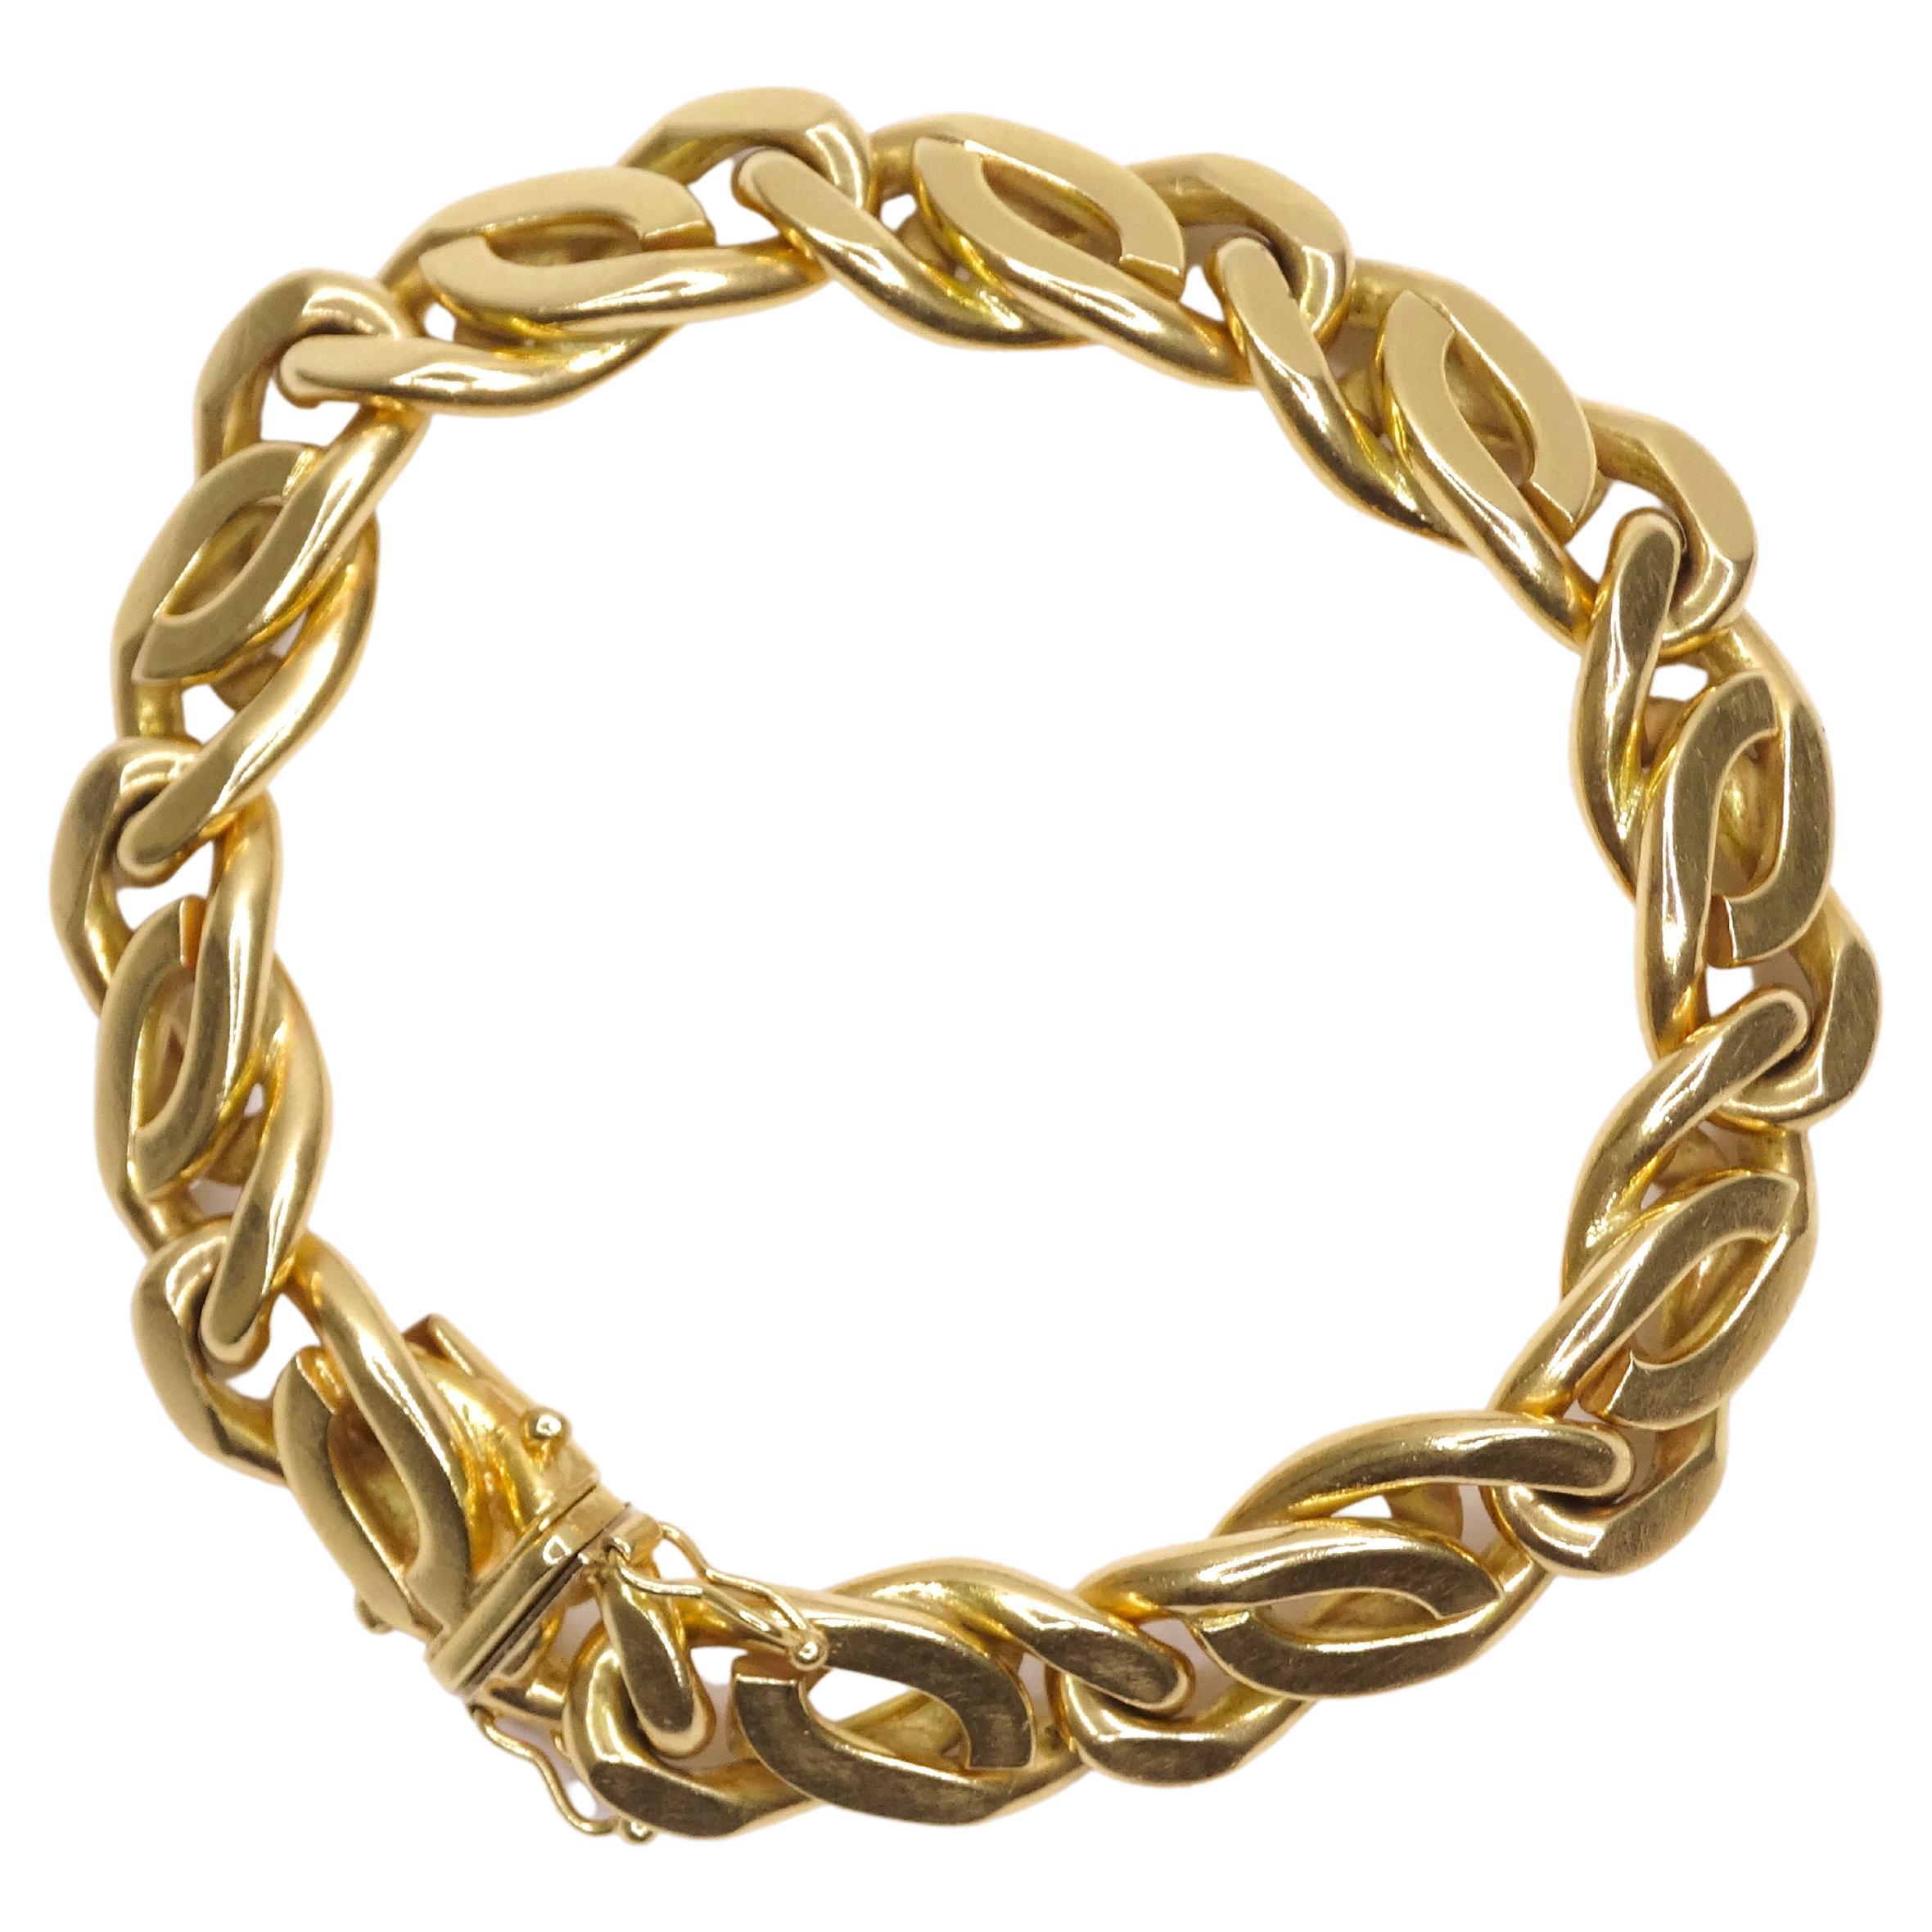 Vivienne Westwood cuban link large chain bracelet